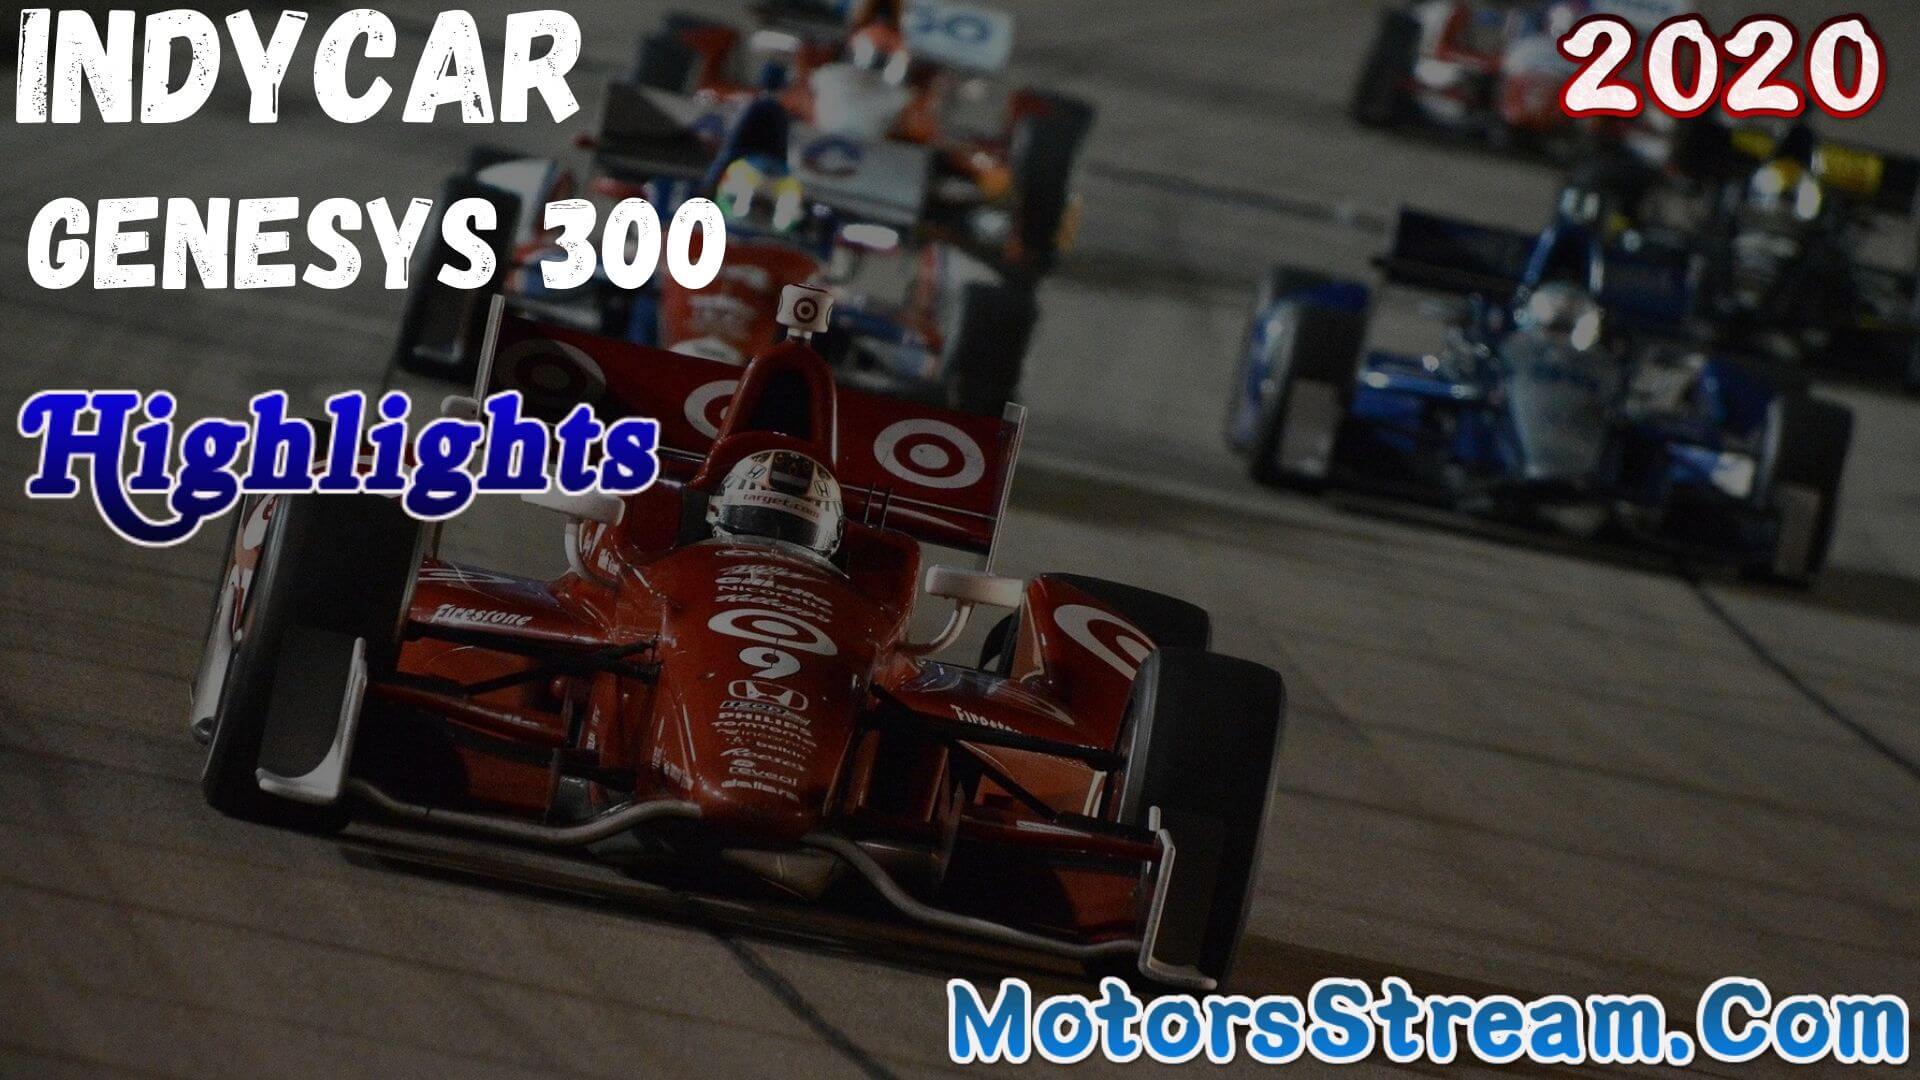 Genesys 300 Highlights 2020 Indycar